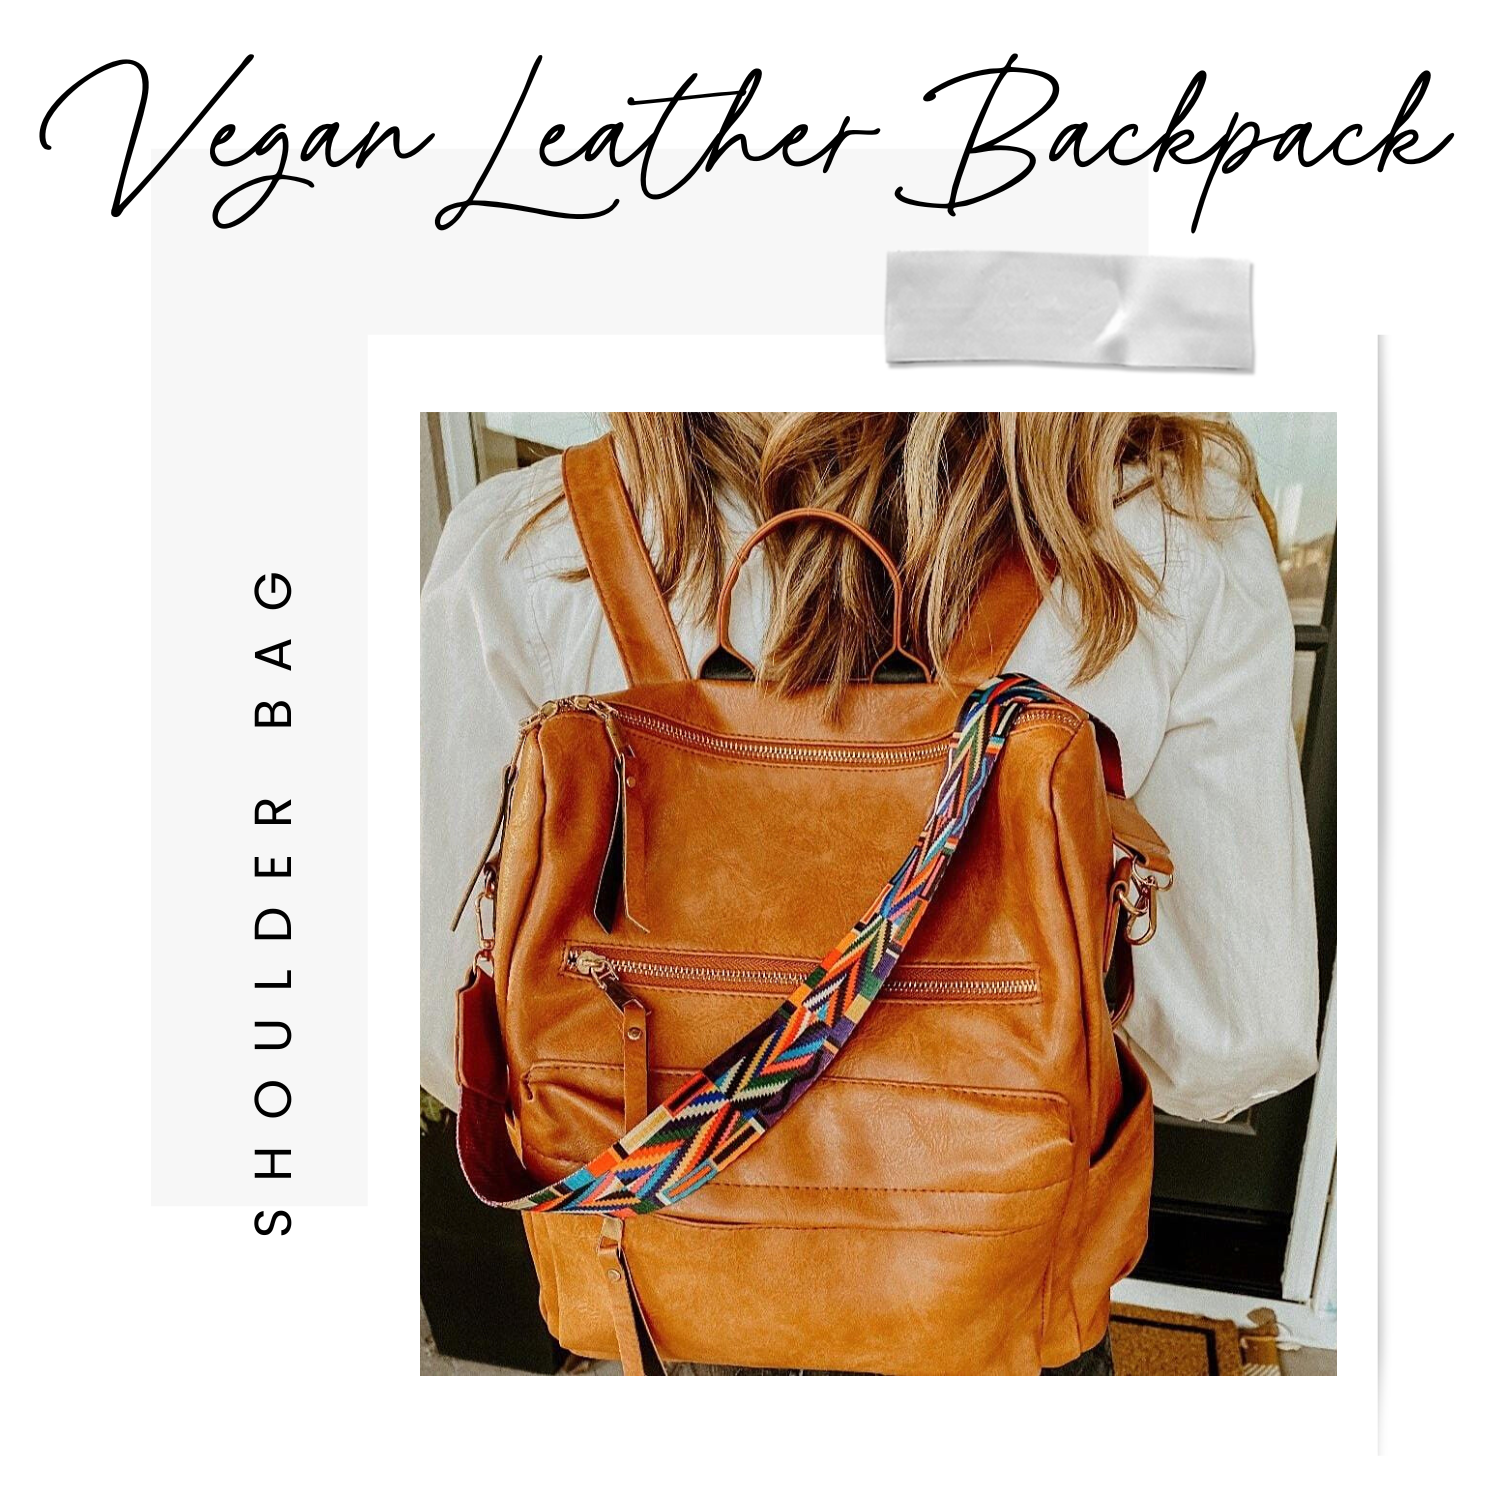 Vegan Bags & Backpacks, Vegan Leather